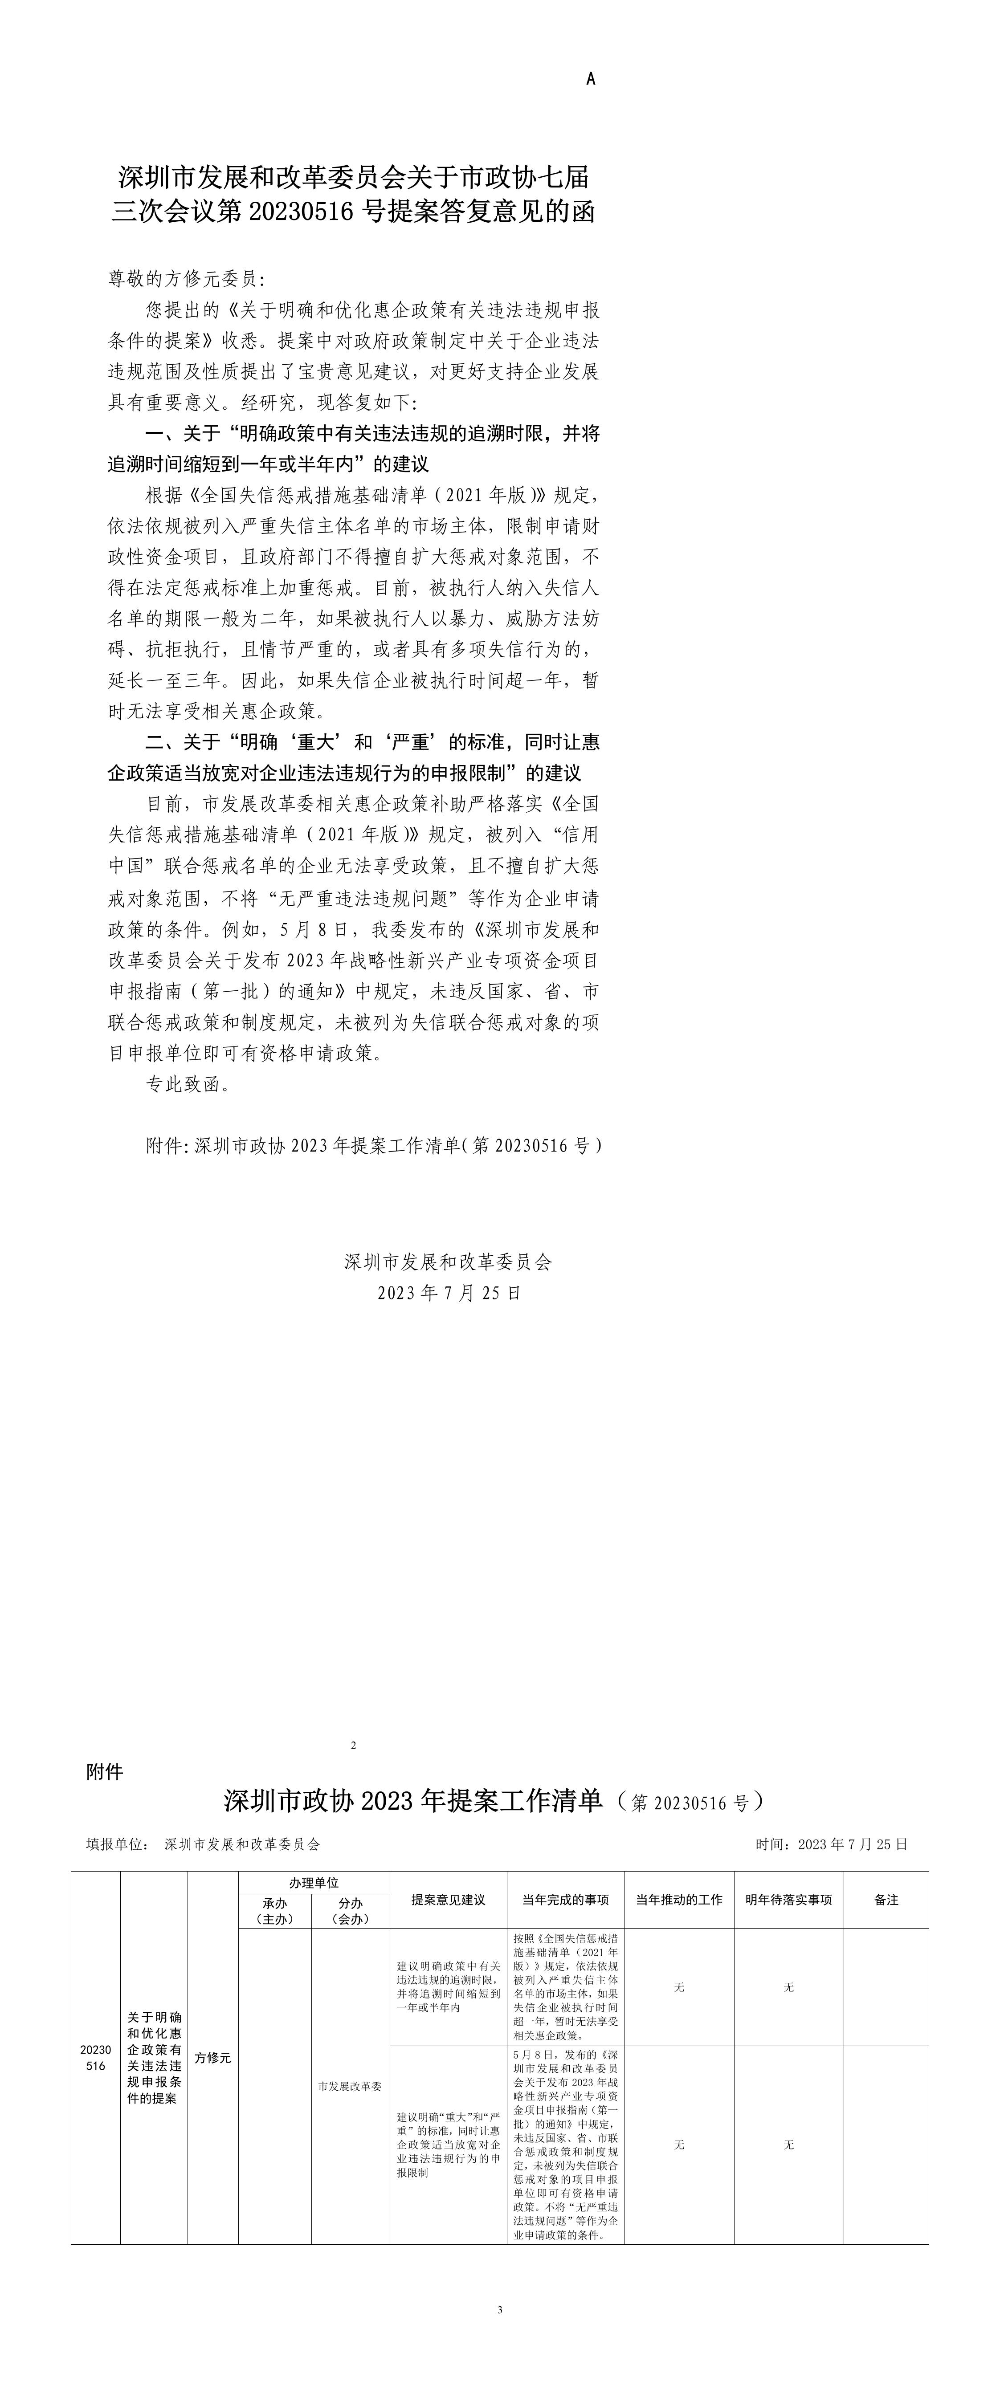 深圳市发展和改革委员会关于市政协七届三次会议第20230516号提案答复意见的函.jpg